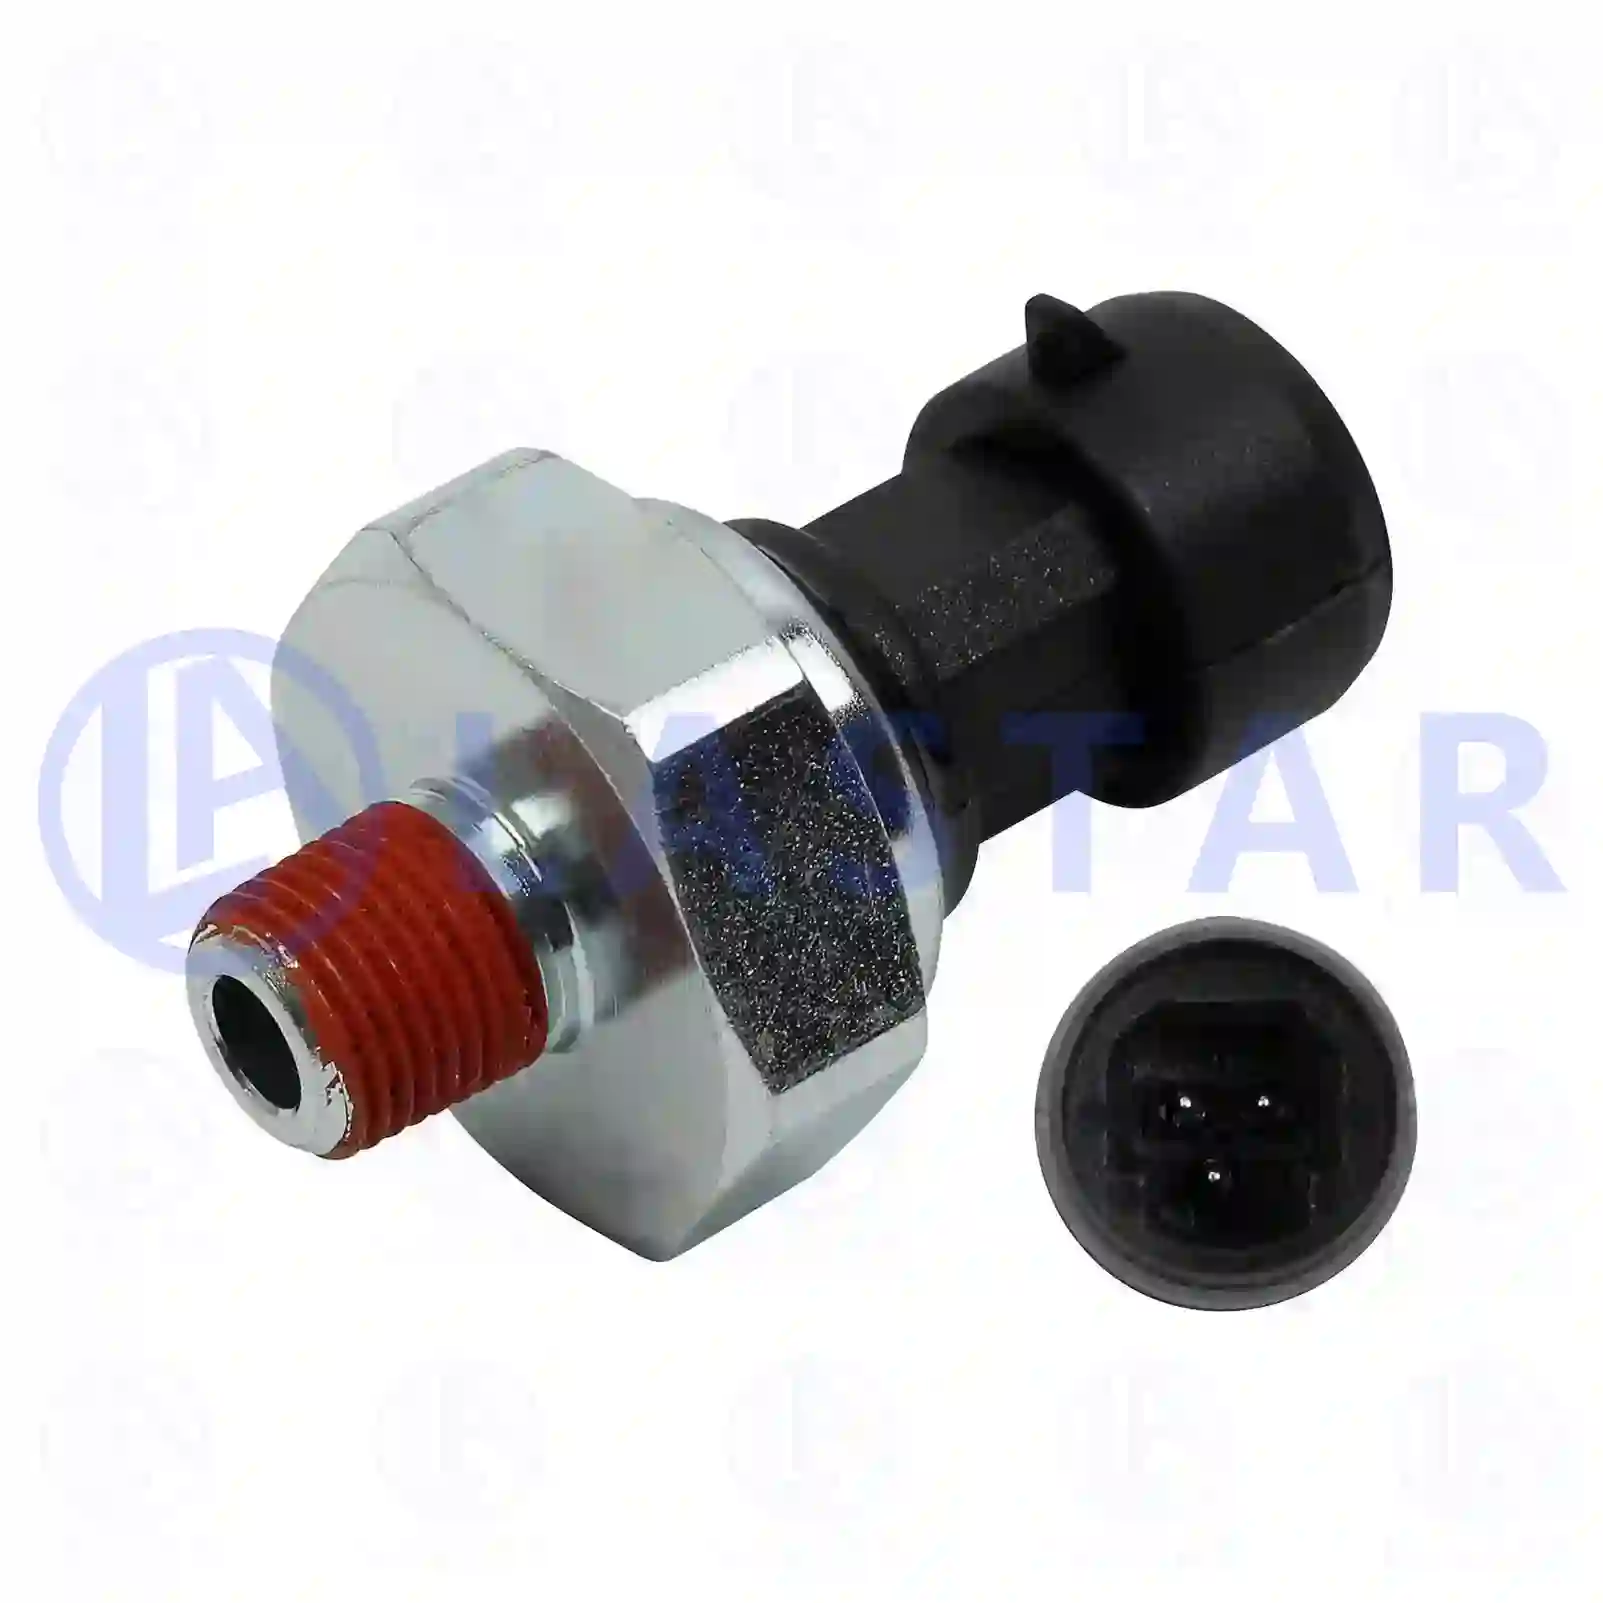  Oil pressure sensor || Lastar Spare Part | Truck Spare Parts, Auotomotive Spare Parts